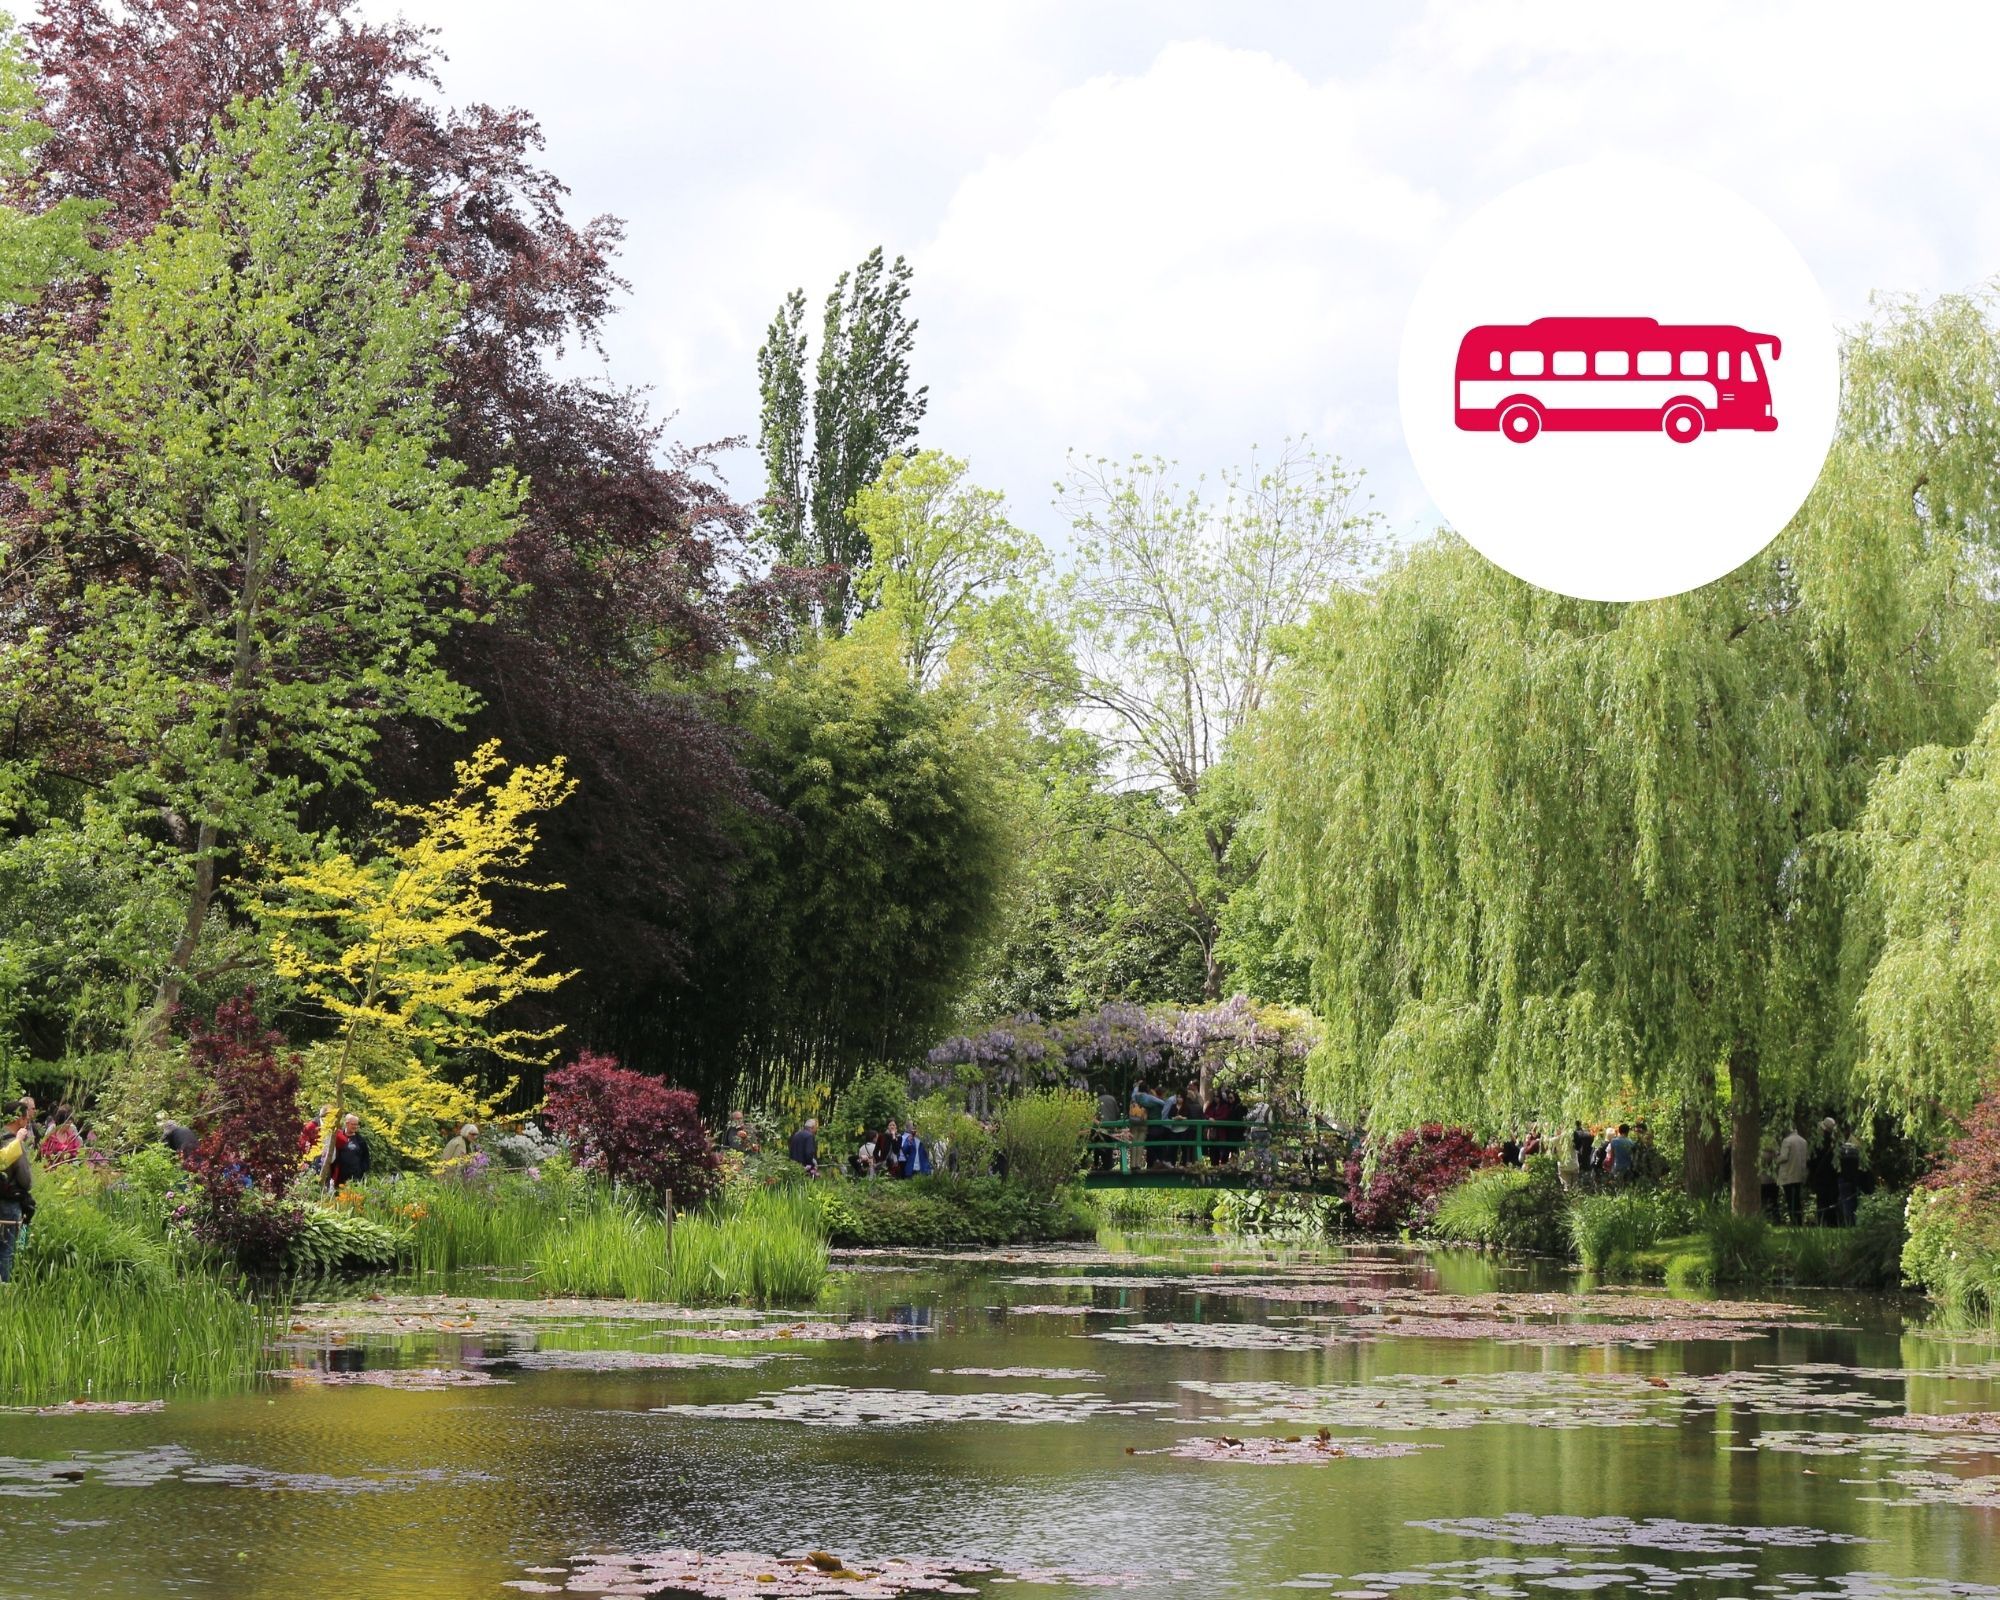 Visita áudio-guiada aos Jardins de Giverny Monet e ao Palácio de Versalhes (almoço e transporte incluídos)